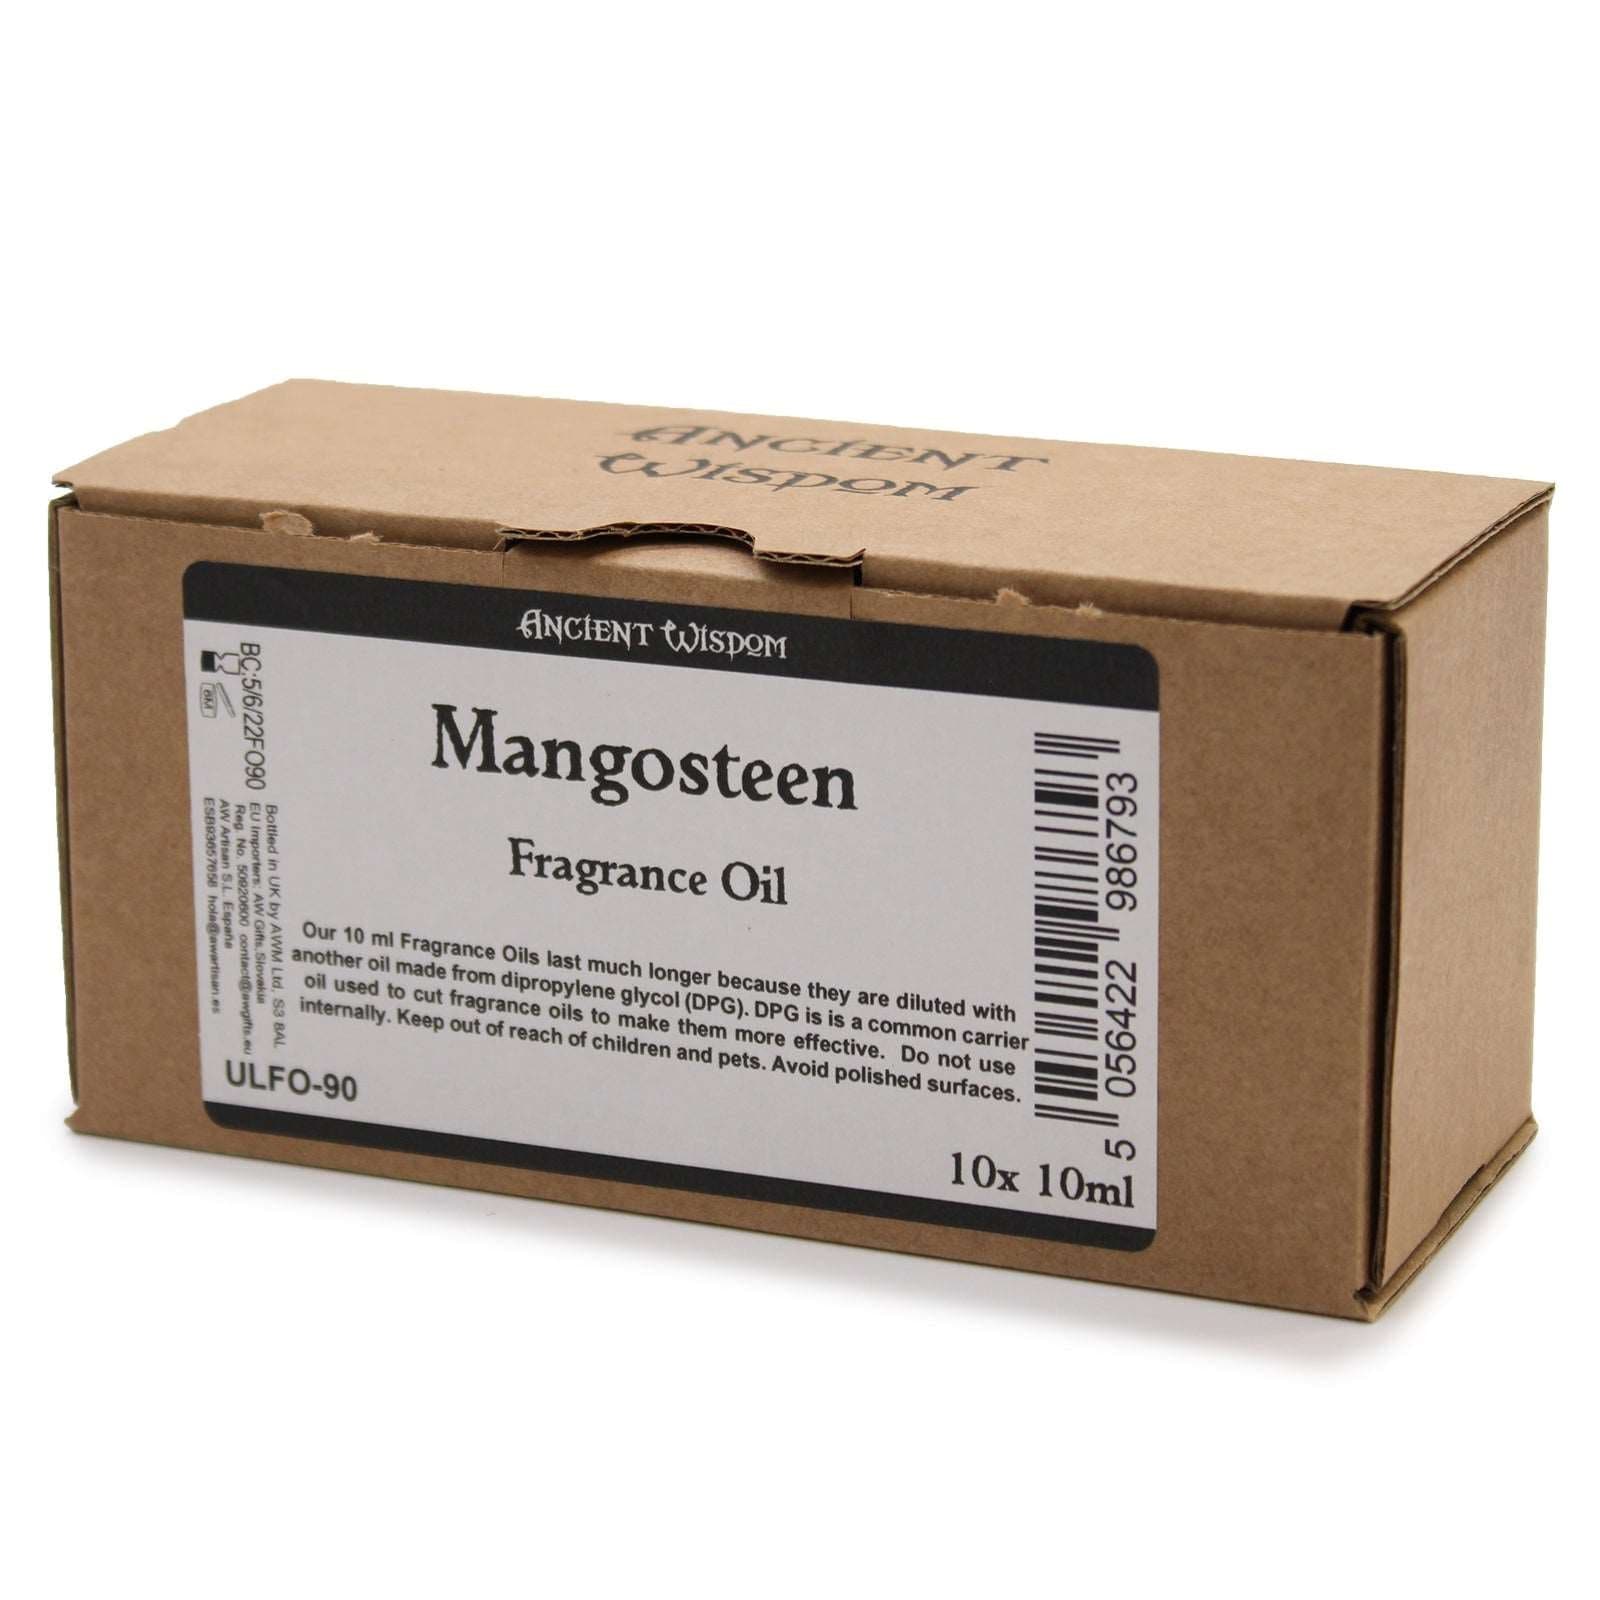 10ml Mangosteen Fragrance Oil 10ml - - best price from Maltashopper.com ULFO-90